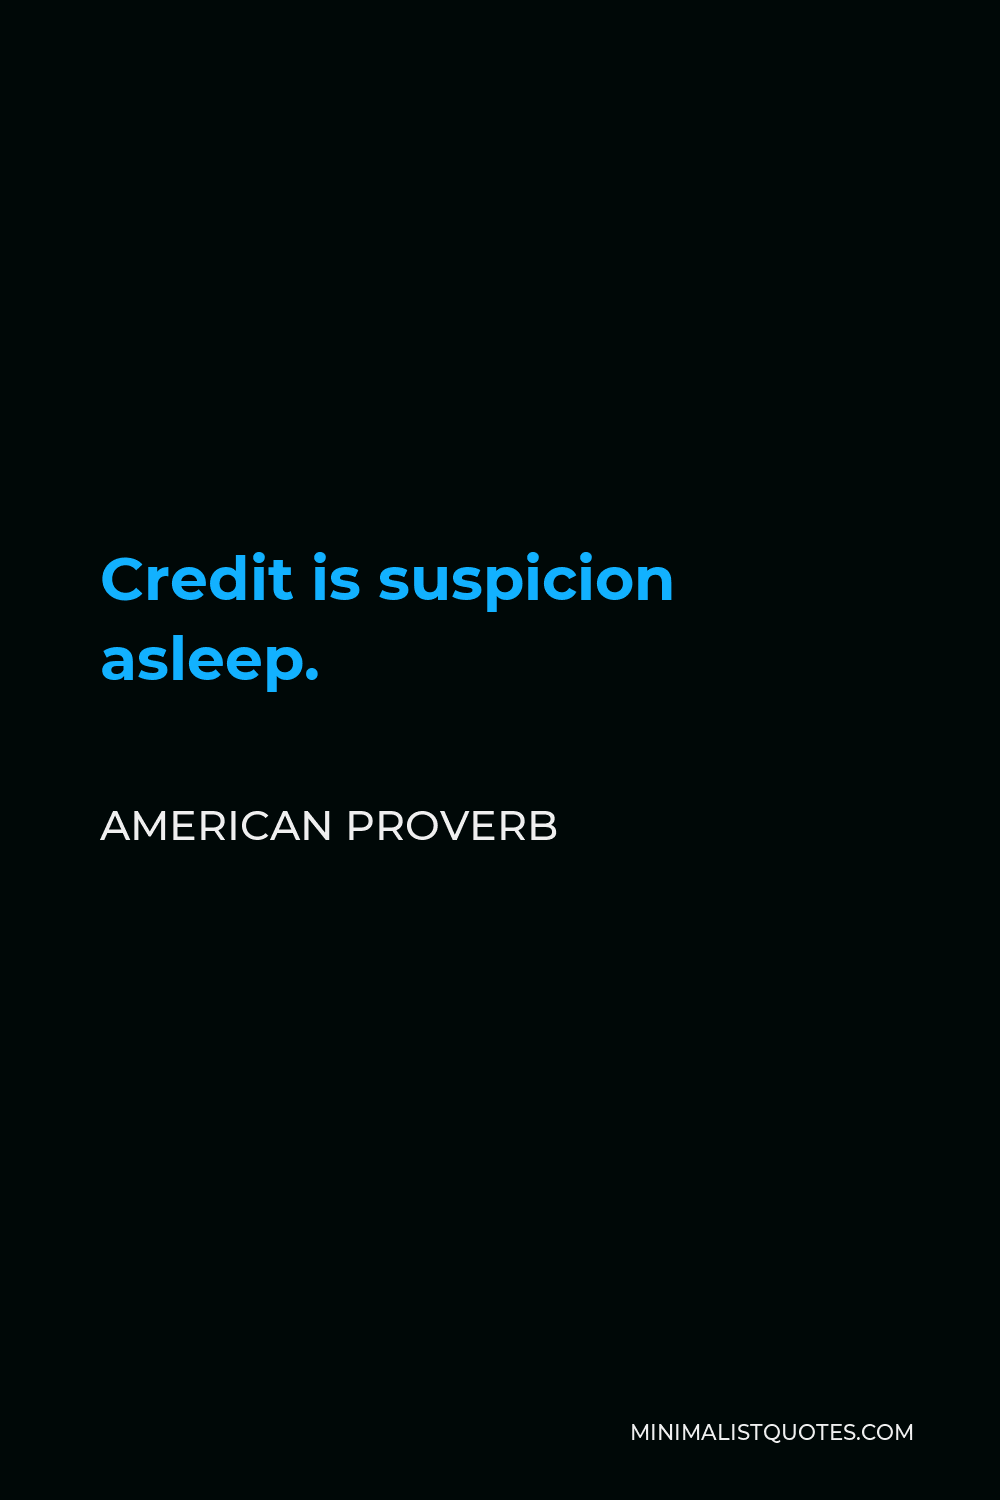 American Proverb Quote - Credit is suspicion asleep.